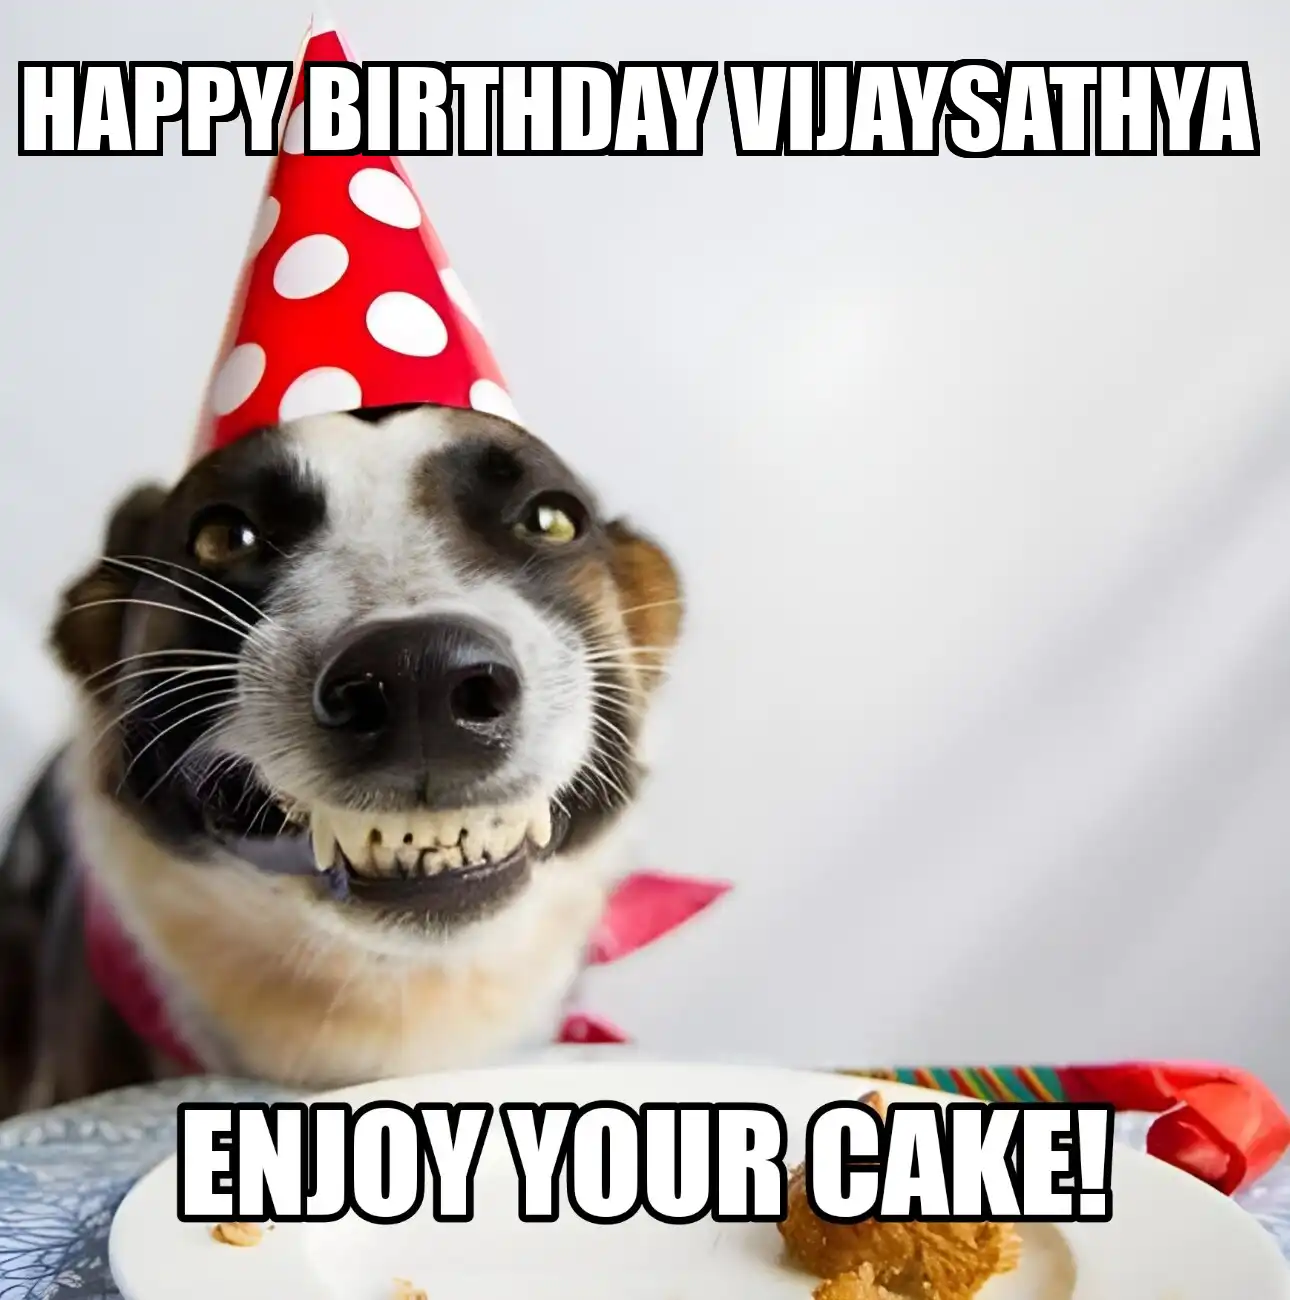 Happy Birthday Vijaysathya Enjoy Your Cake Dog Meme